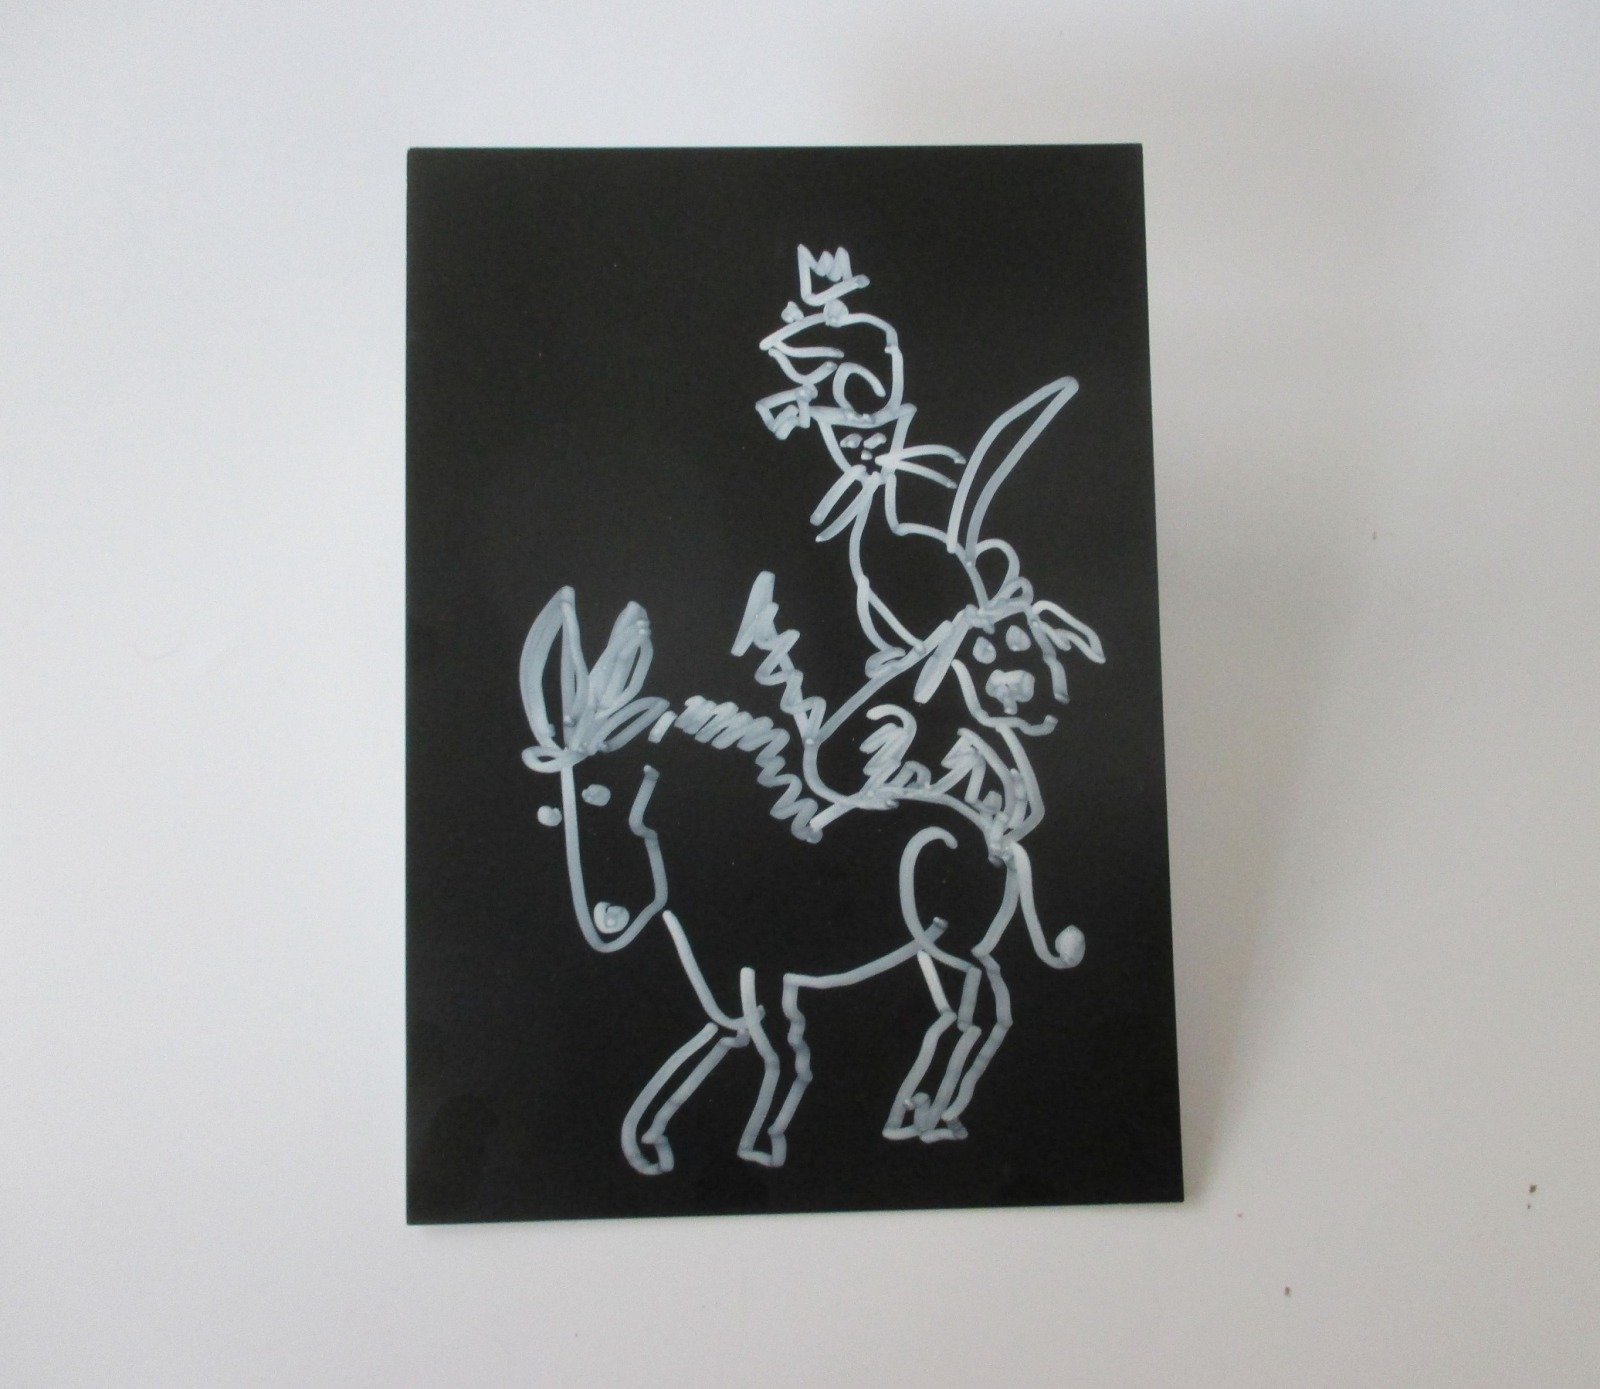 Turm der Tiere - Original Zeichnung auf dickem Karton black/White Acryl 21x15 cm 2